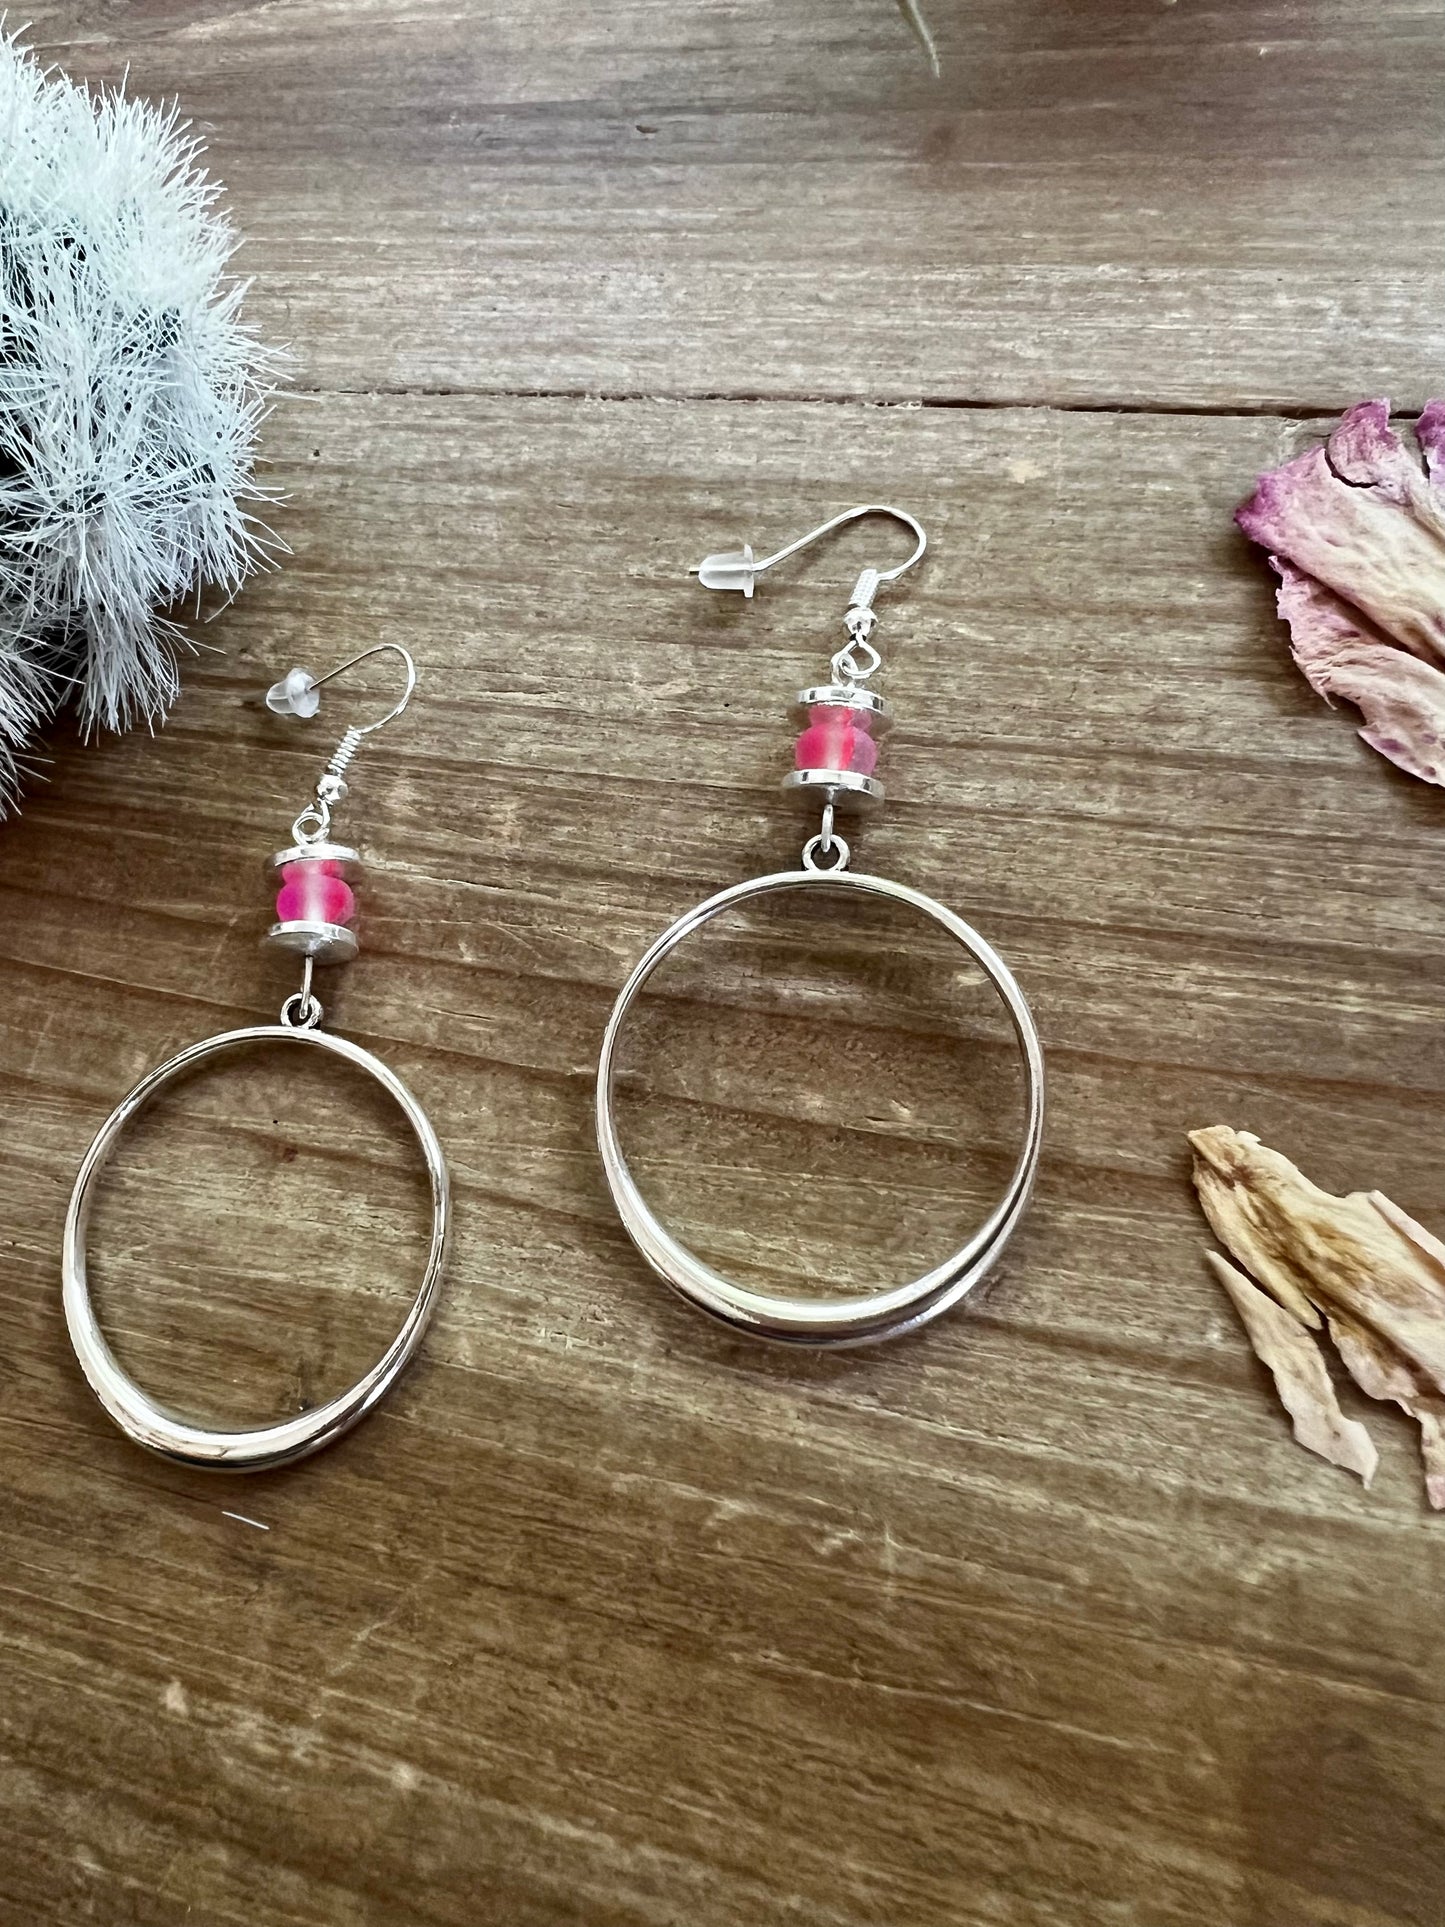 Pink mermaids beads on hoop earrings